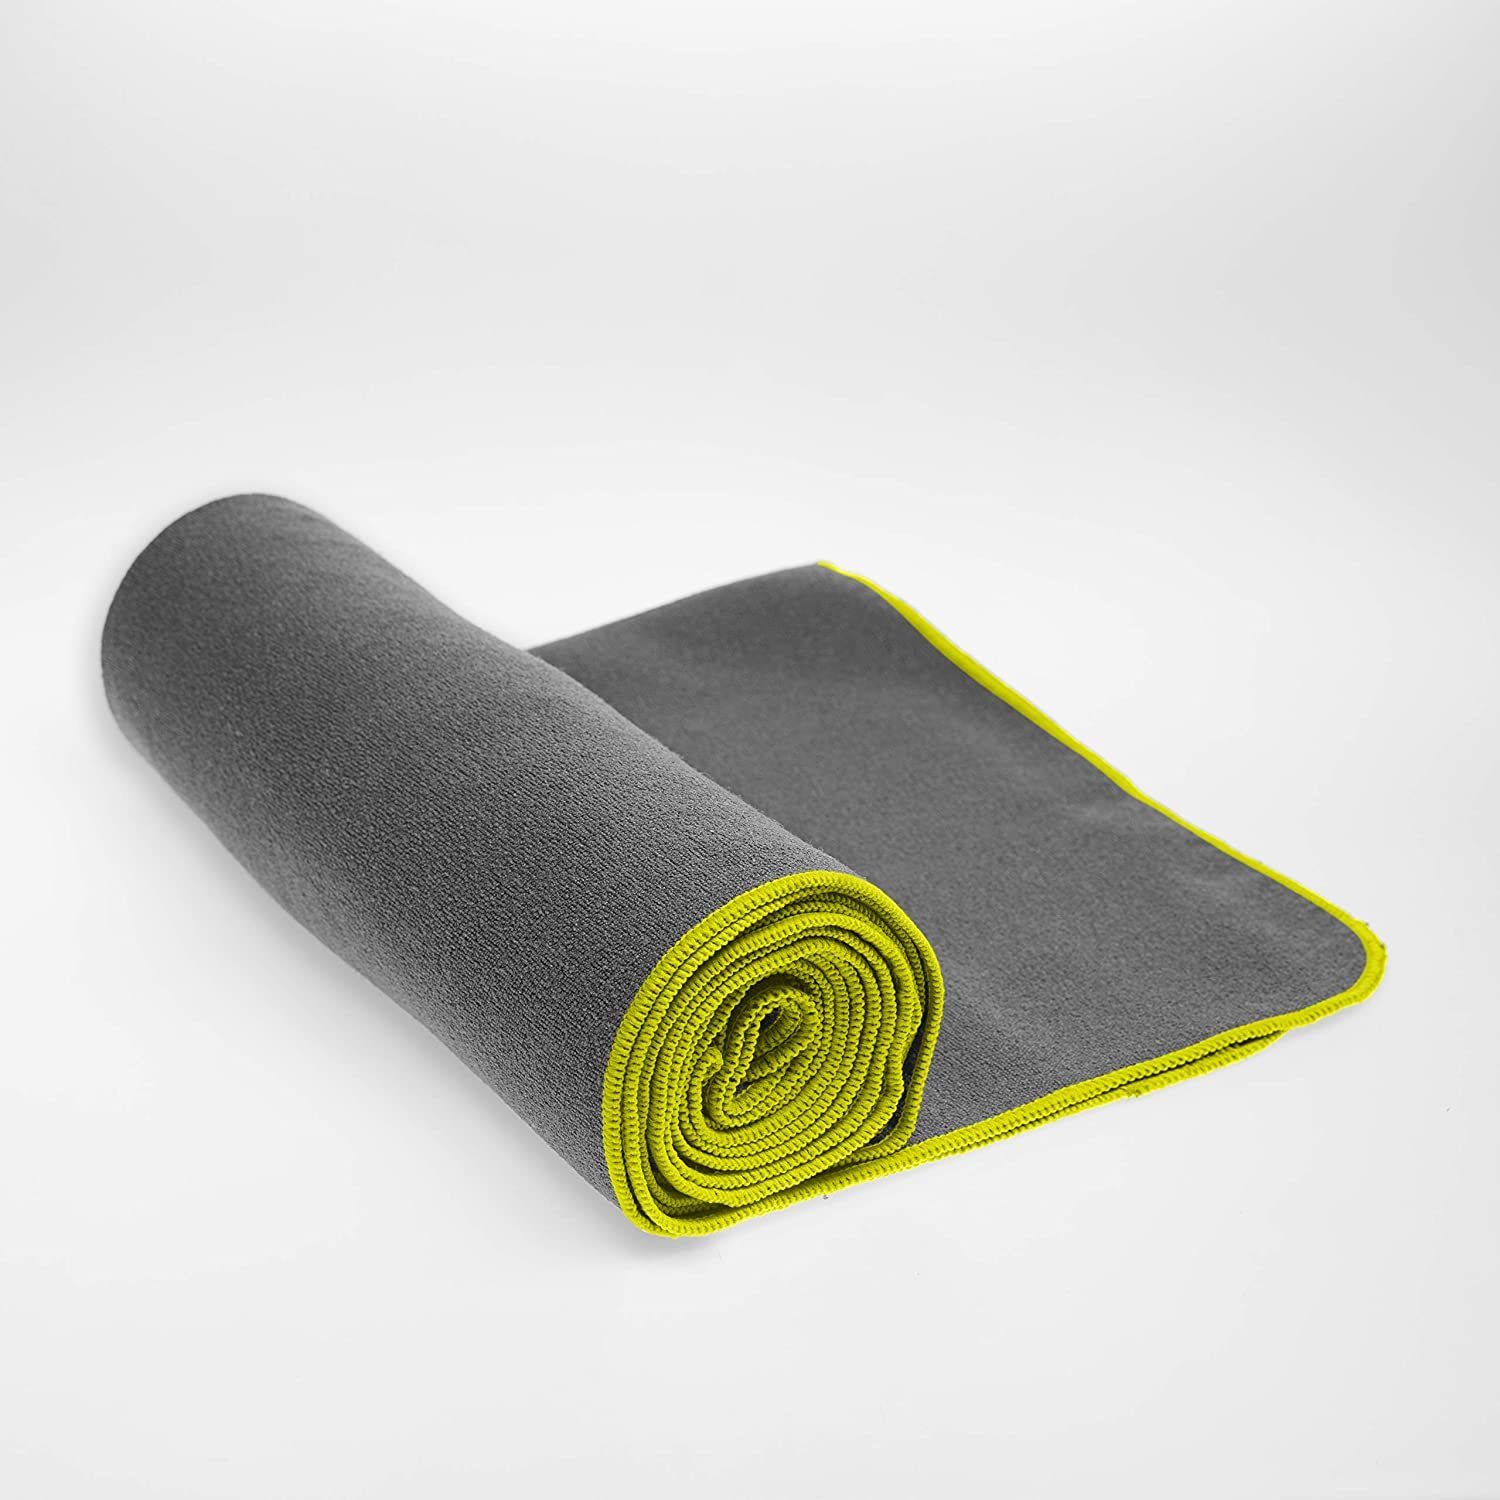 NirvanaShape Sporthandtuch Yoga Handtuch Grau Microfaser, Einführungs Gelber / Yogatuch-Auflage Yogatuch-Auflage Antirutsch-Noppen, Yogamatte, Saugstark, für Hygienisch +Yoga mit eBook, Rand